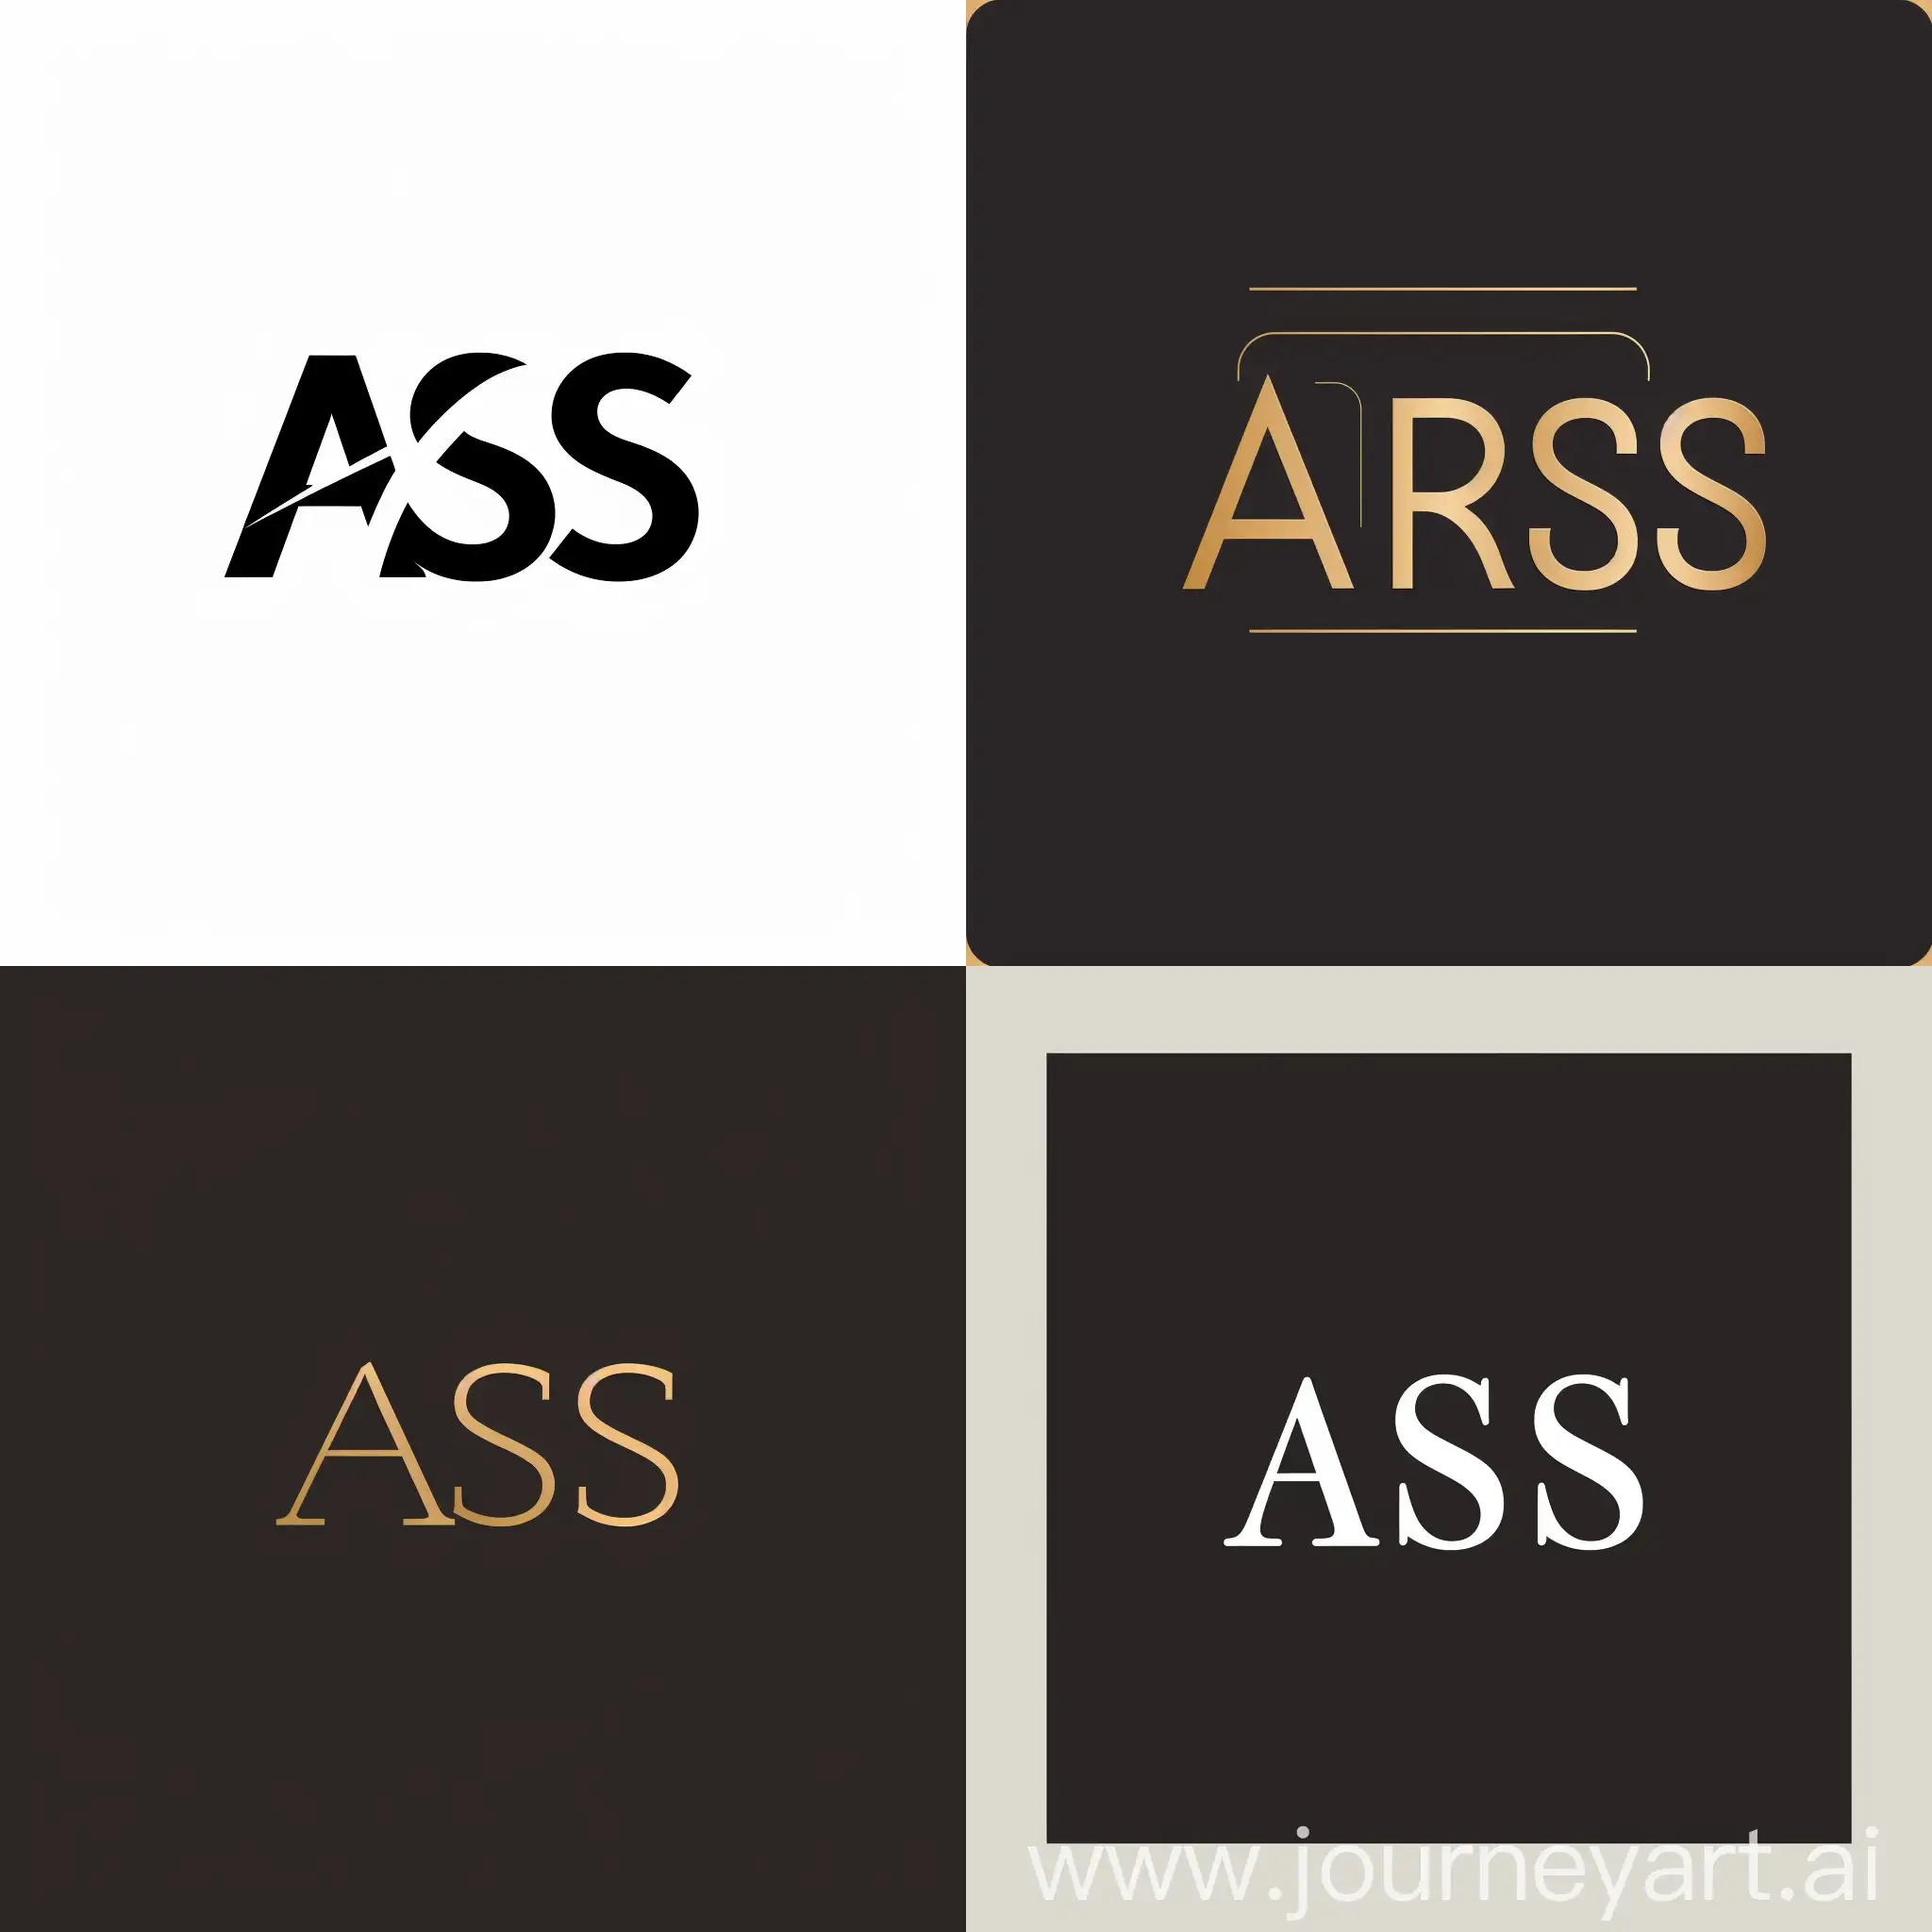 Придумай логотип компании используя буквы: A R S S